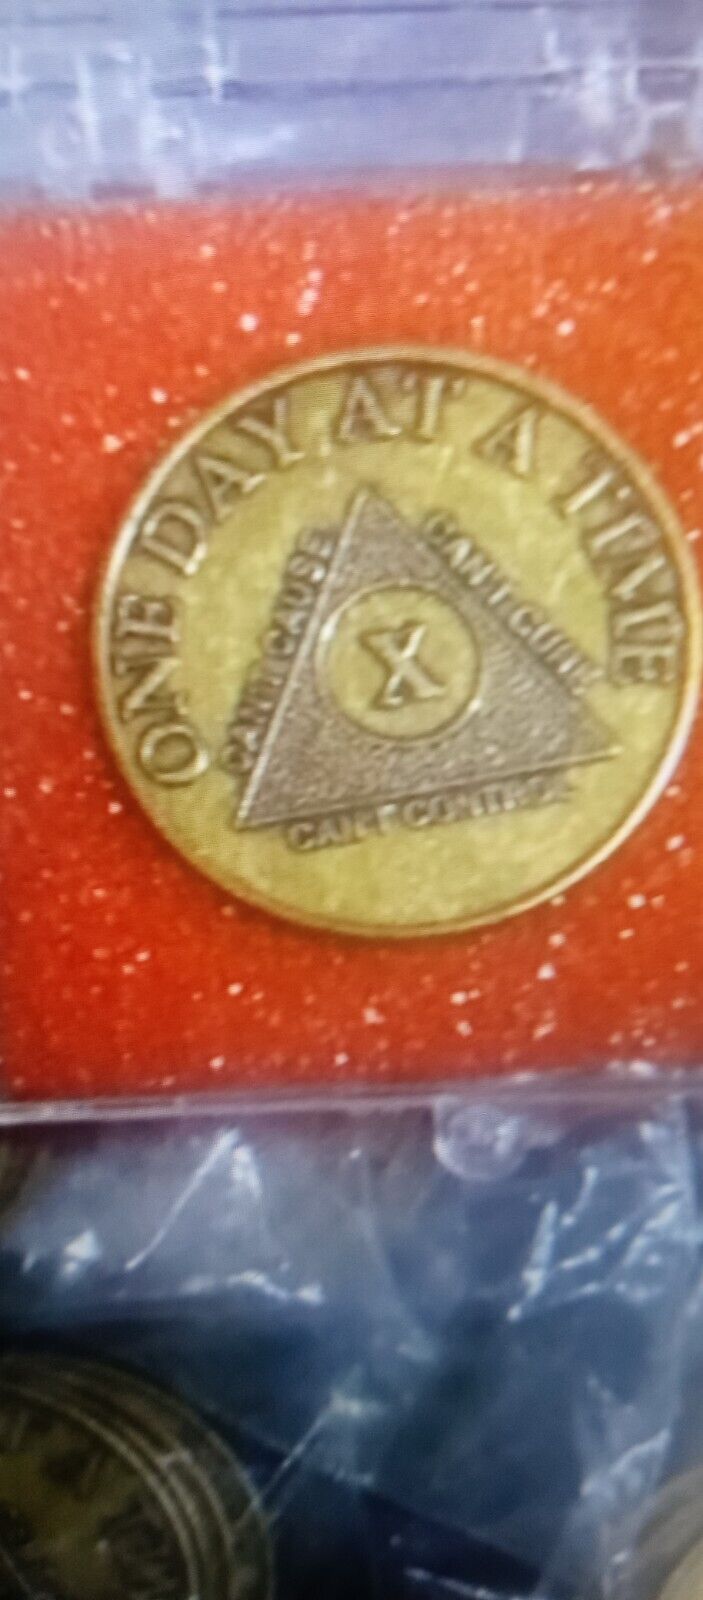  Al-Anon AA 24 Year Bronze Medallion Coin Serenity Recovery GA OA Token Chip ALB